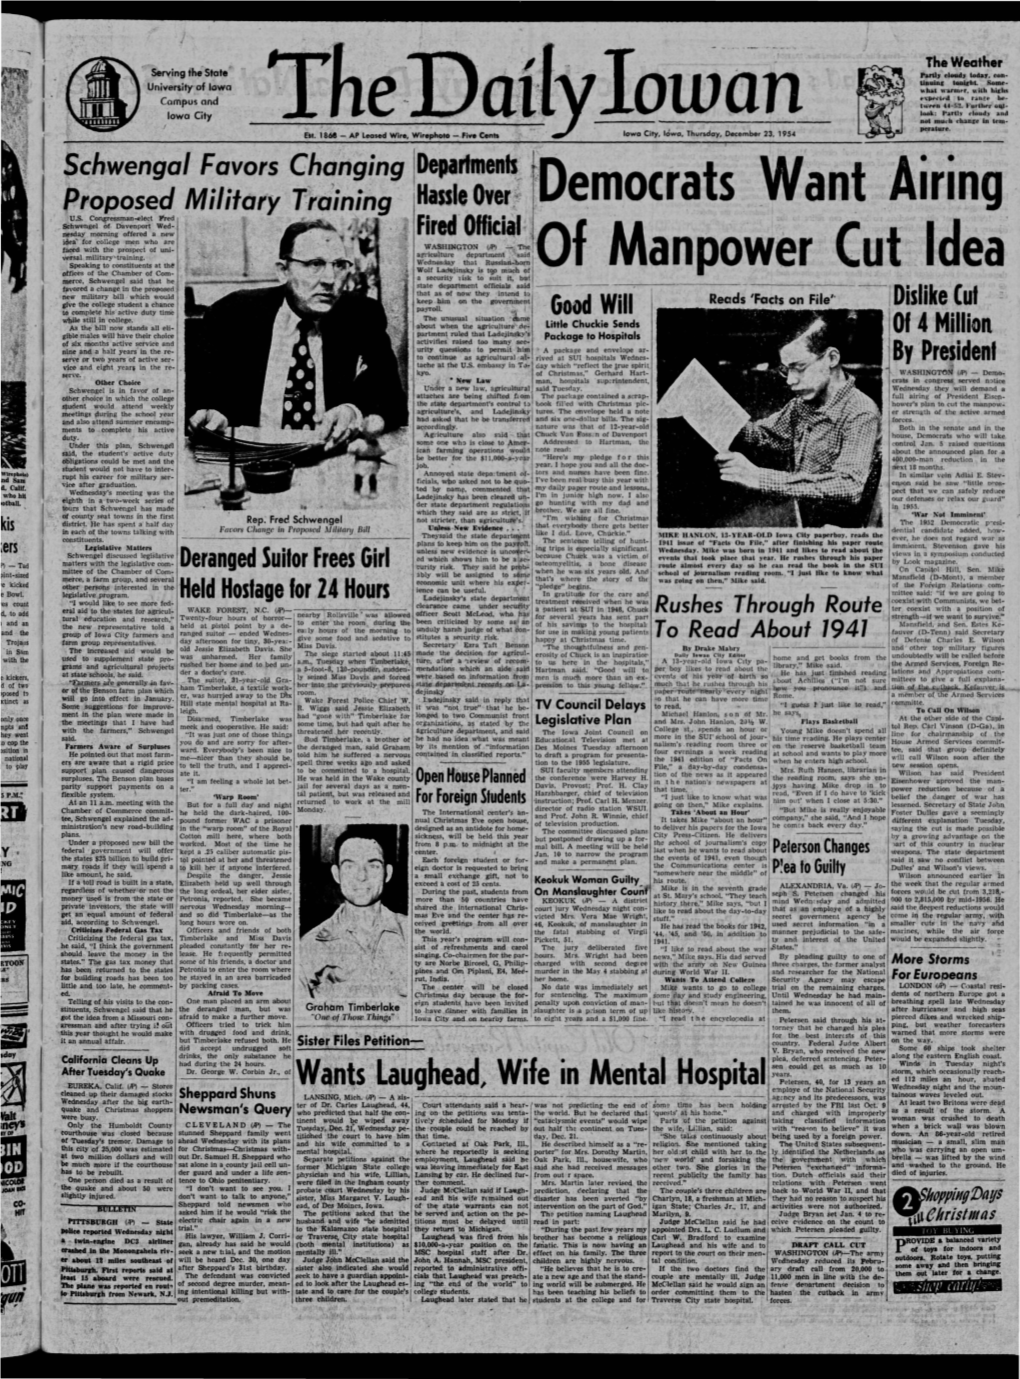 Daily Iowan (Iowa City, Iowa), 1954-12-23